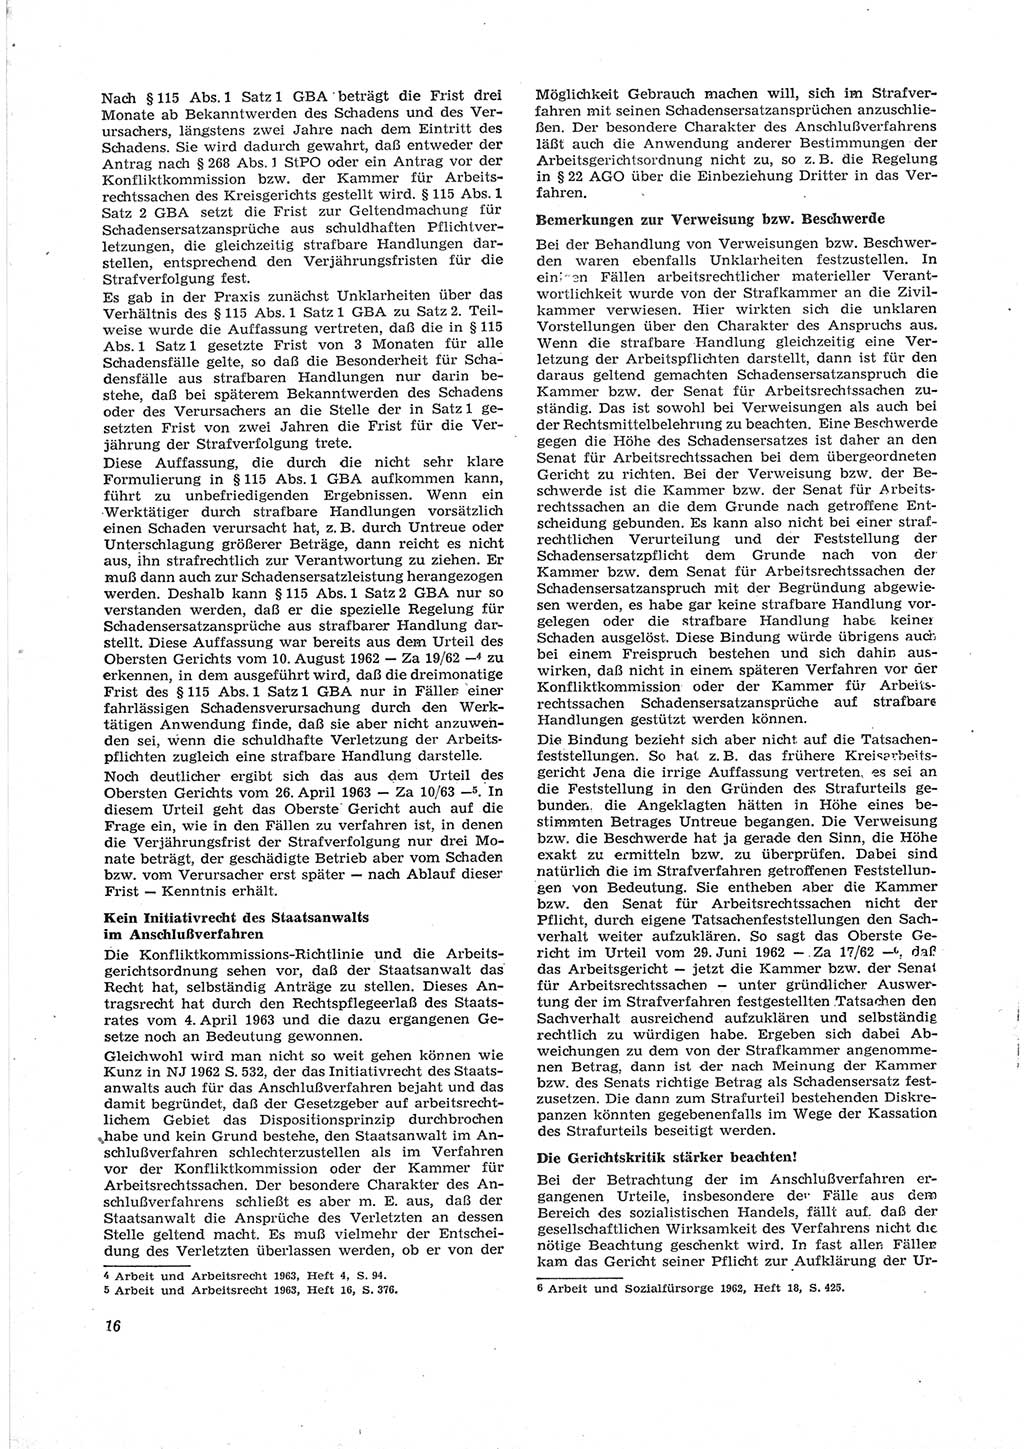 Neue Justiz (NJ), Zeitschrift für Recht und Rechtswissenschaft [Deutsche Demokratische Republik (DDR)], 18. Jahrgang 1964, Seite 16 (NJ DDR 1964, S. 16)